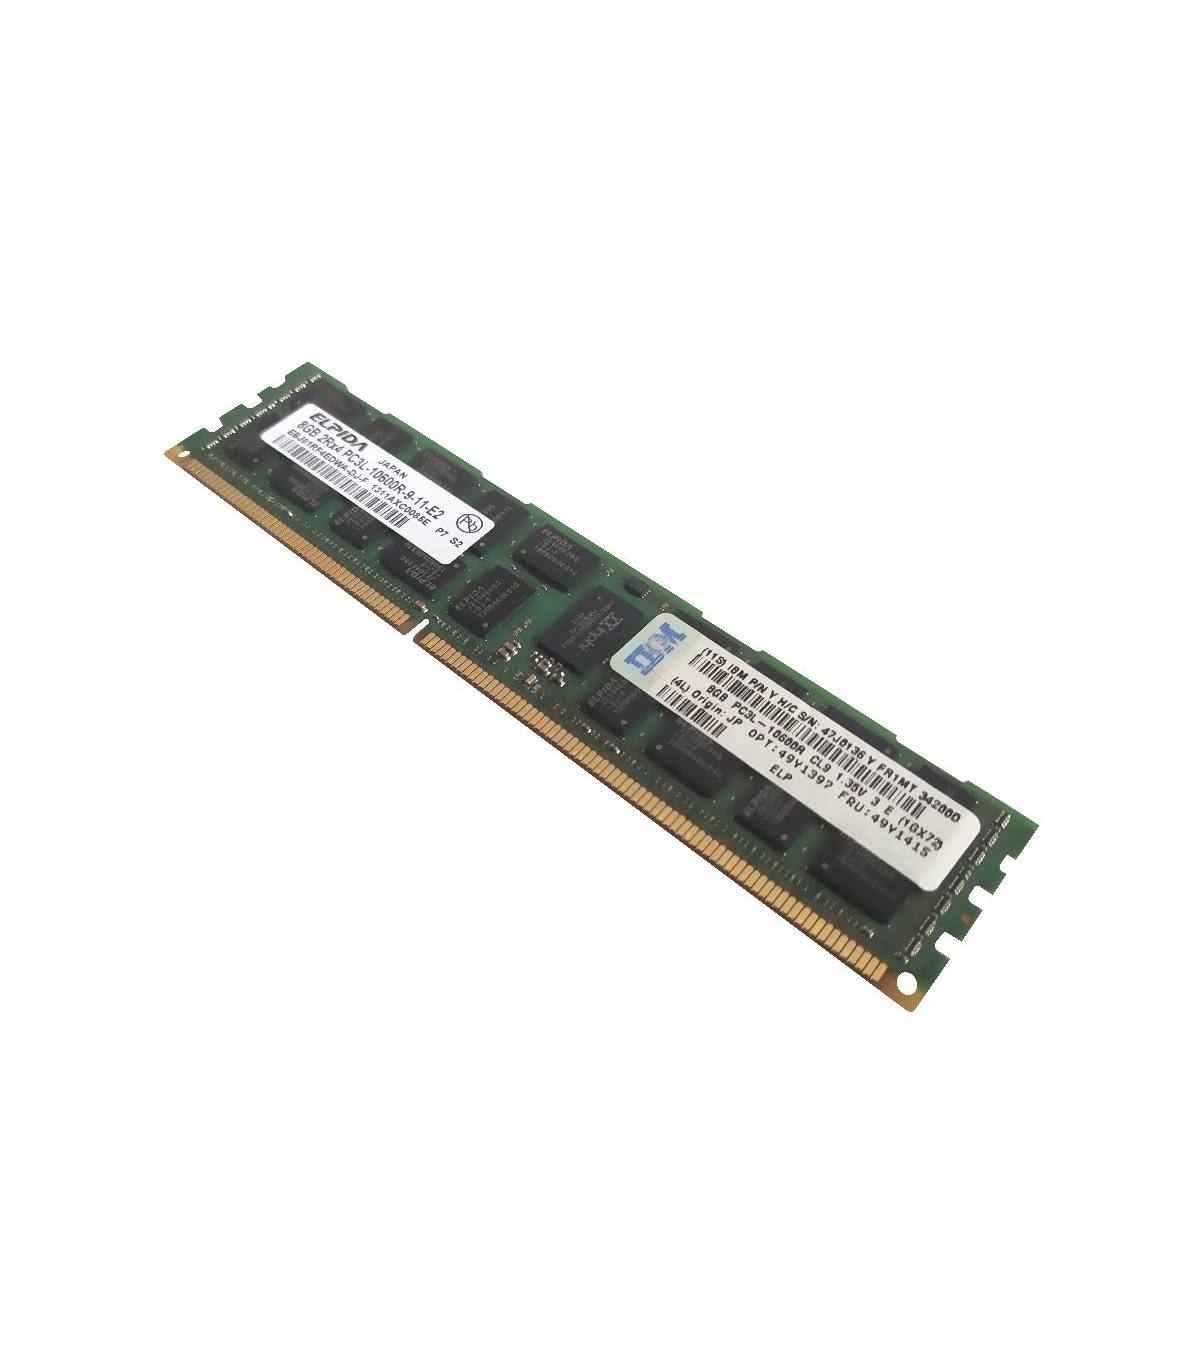 RAM ELPIDA/IBM 8GB 2Rx4 PC3L 10600R 49Y1415 EBJ81RF4EDWA-DJ-F